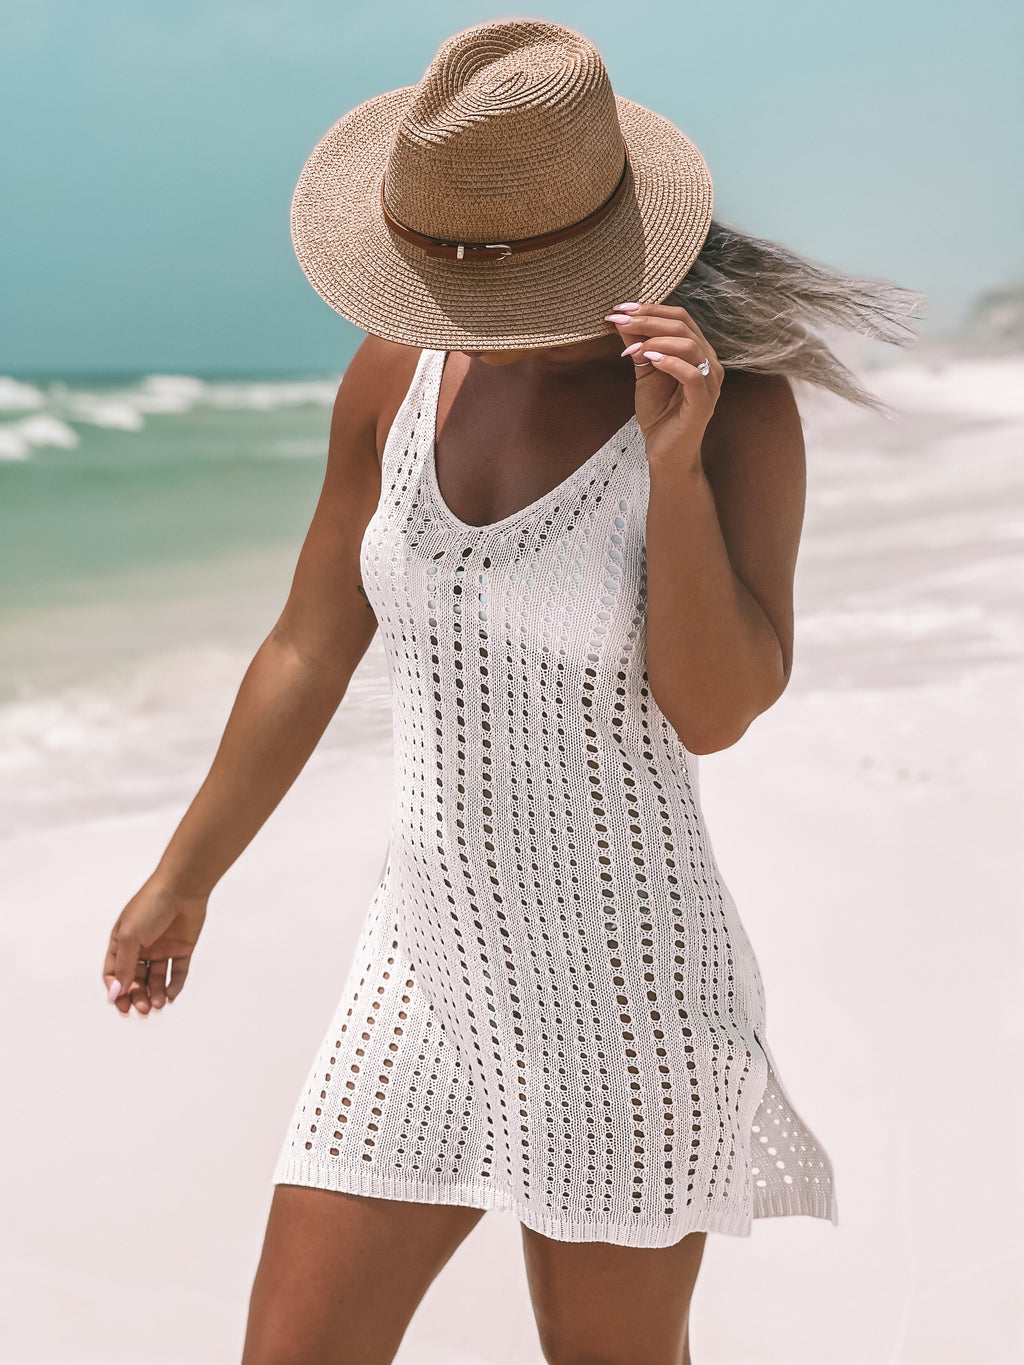 Meet Me At The Beach Hat